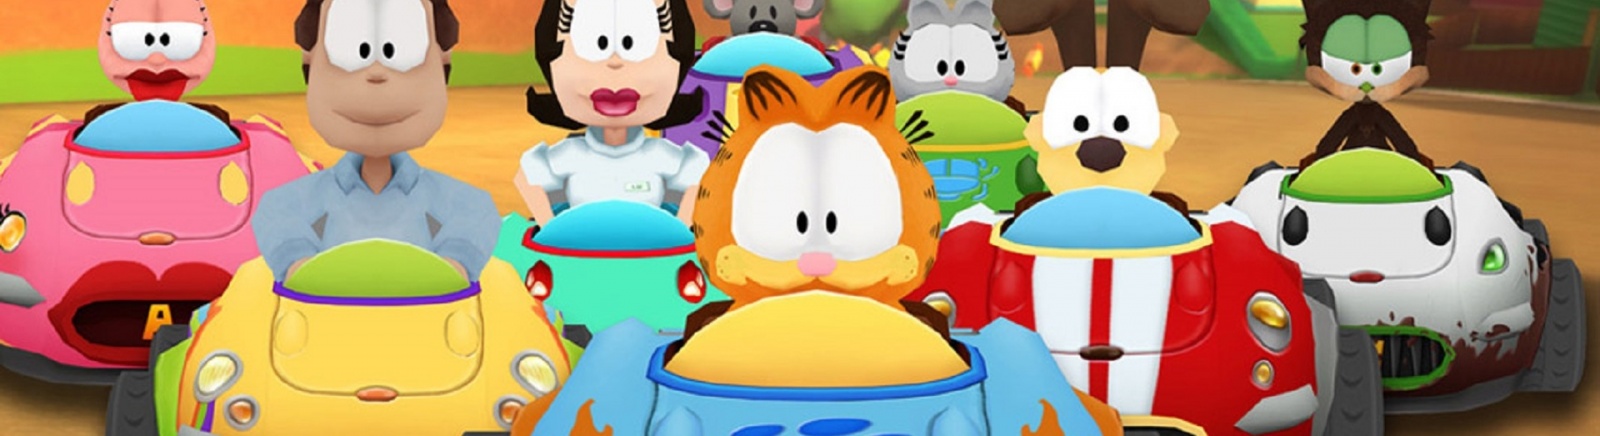 Дата выхода Garfield Kart  на PC, iOS и Android в России и во всем мире